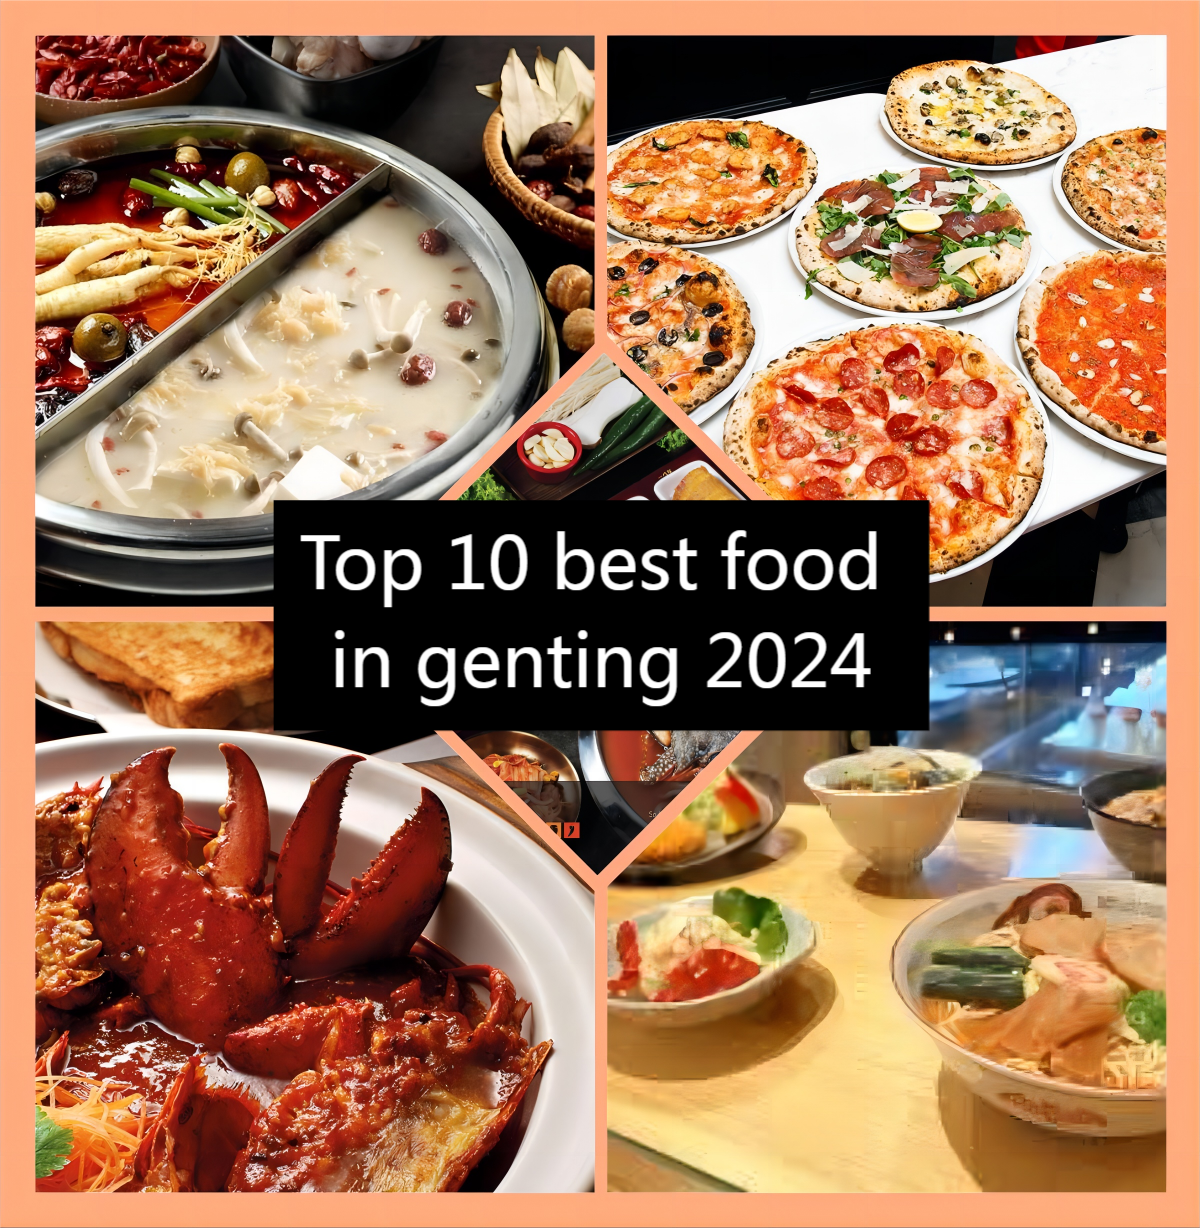 Top 10 best food in genting 2024